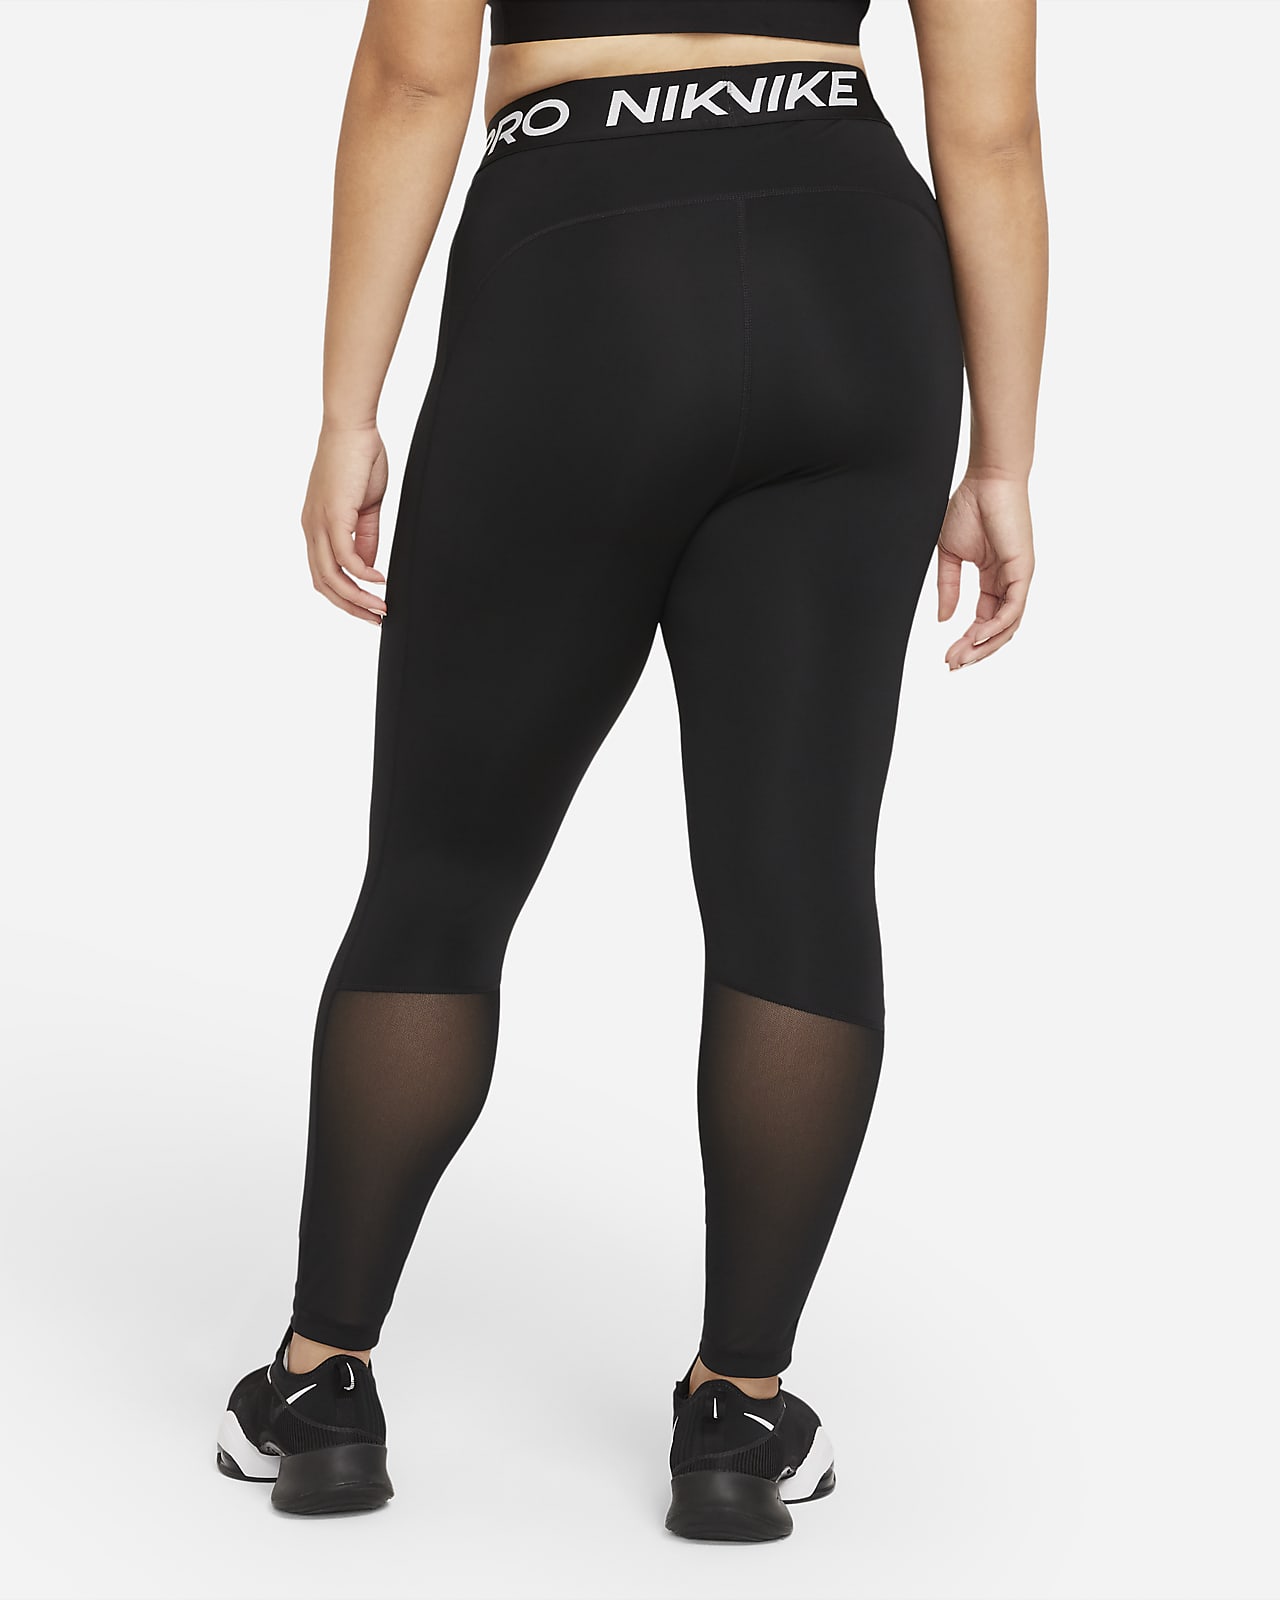 Nike Pro 365 Women's Leggings (Plus Size). Nike BG